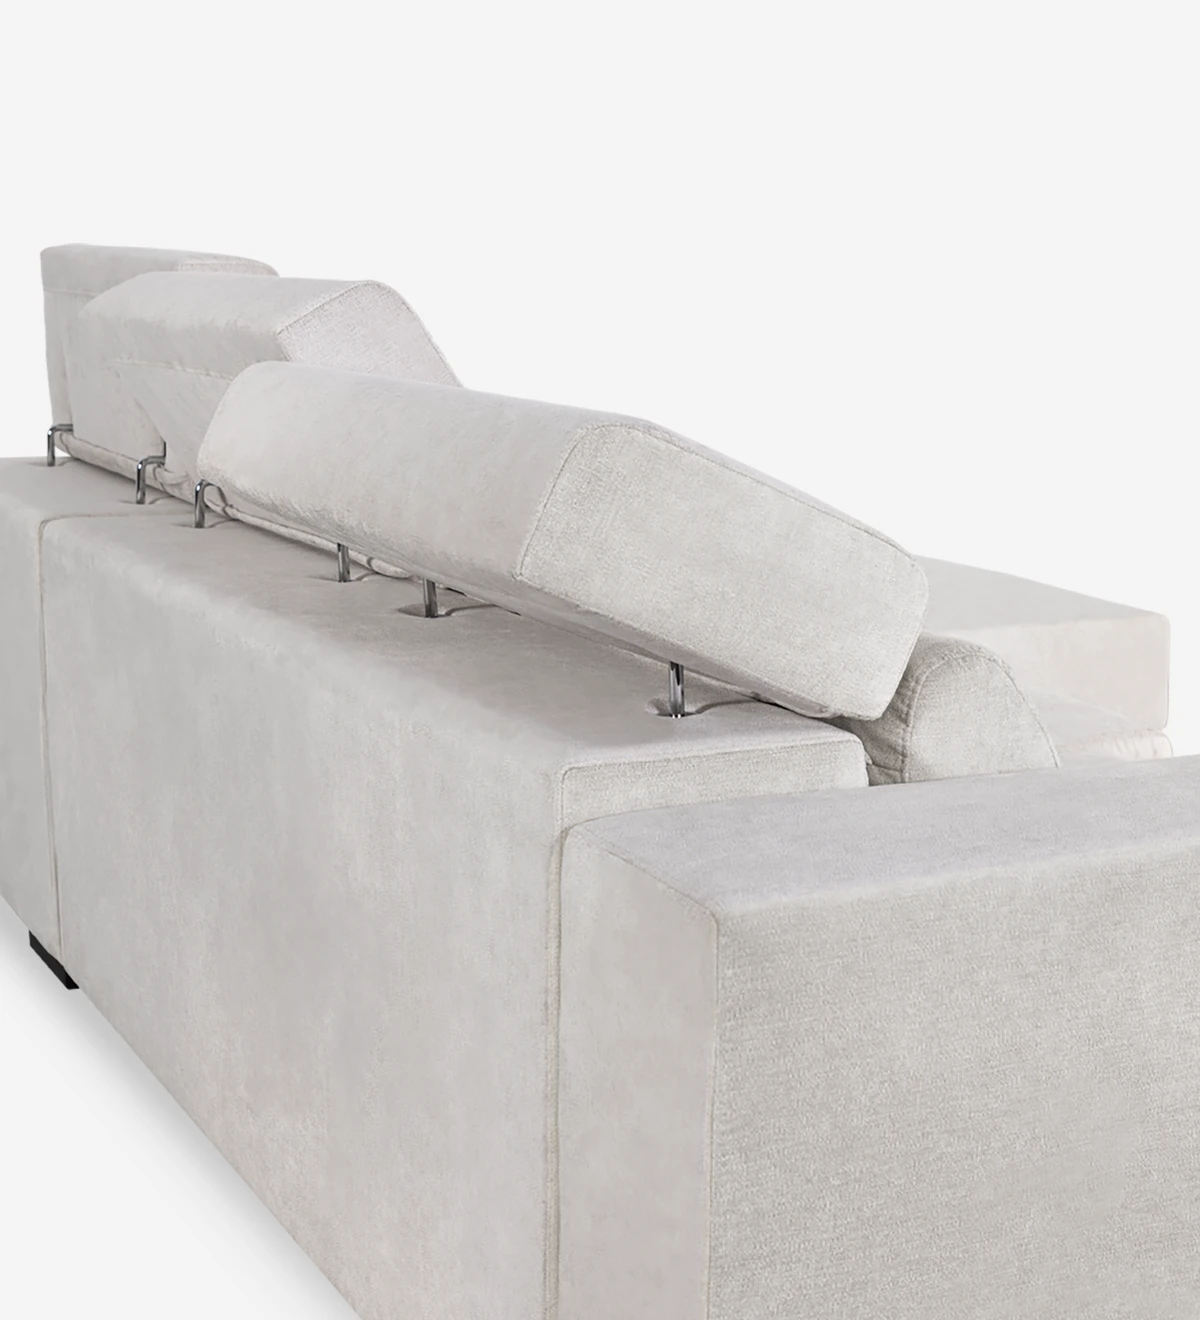 Sofá de 2 lugares com chaise longue reversível, estofado a tecido, com apoios de cabeça reclináveis, assentos deslizantes e arrumação na chaise longue.